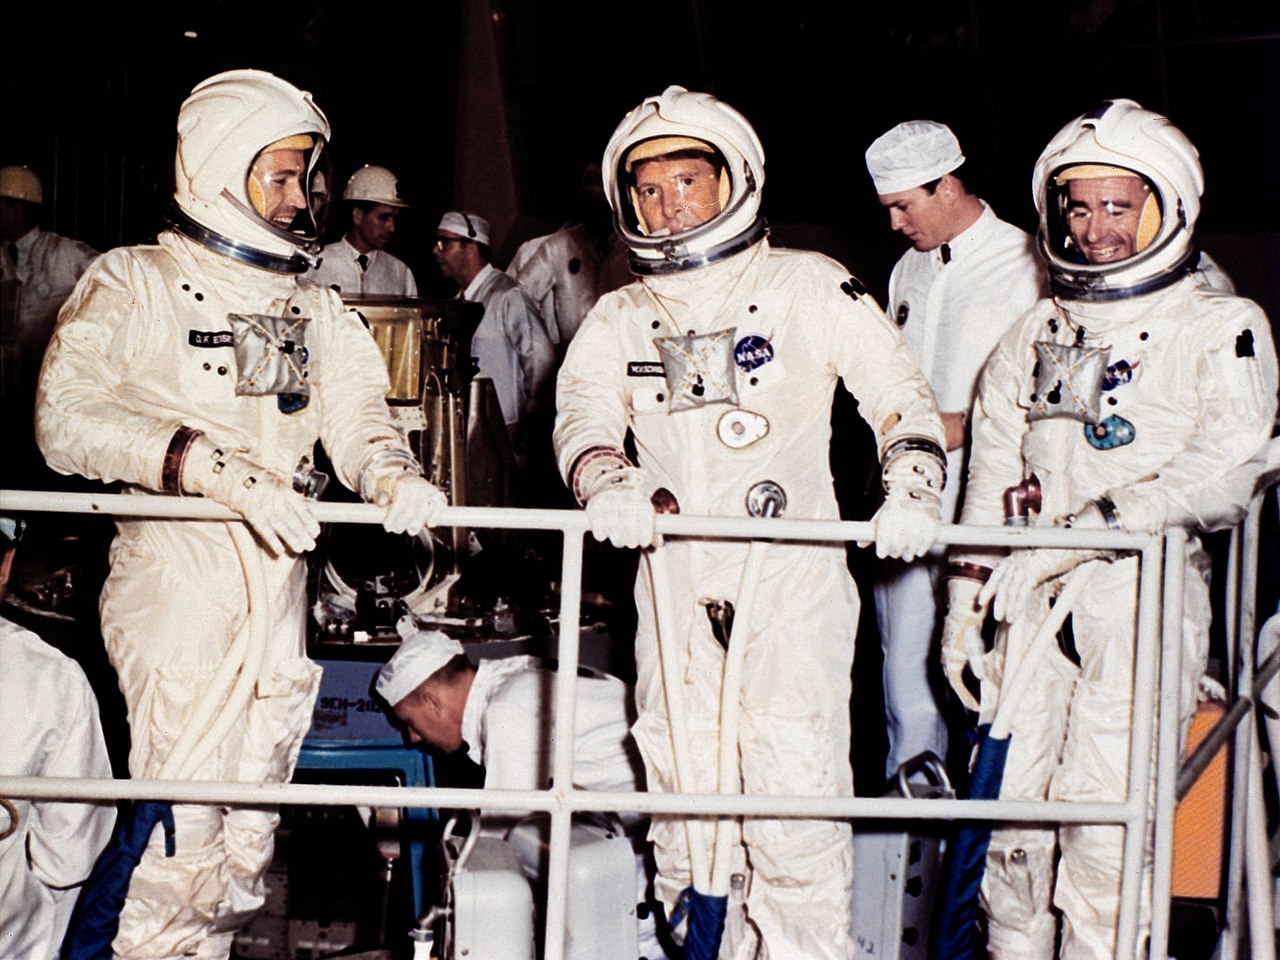 ยานอวกาศ อพอลโล 7 (Apollo 7) ถูกส่งขึ้นสู่วงโคจร